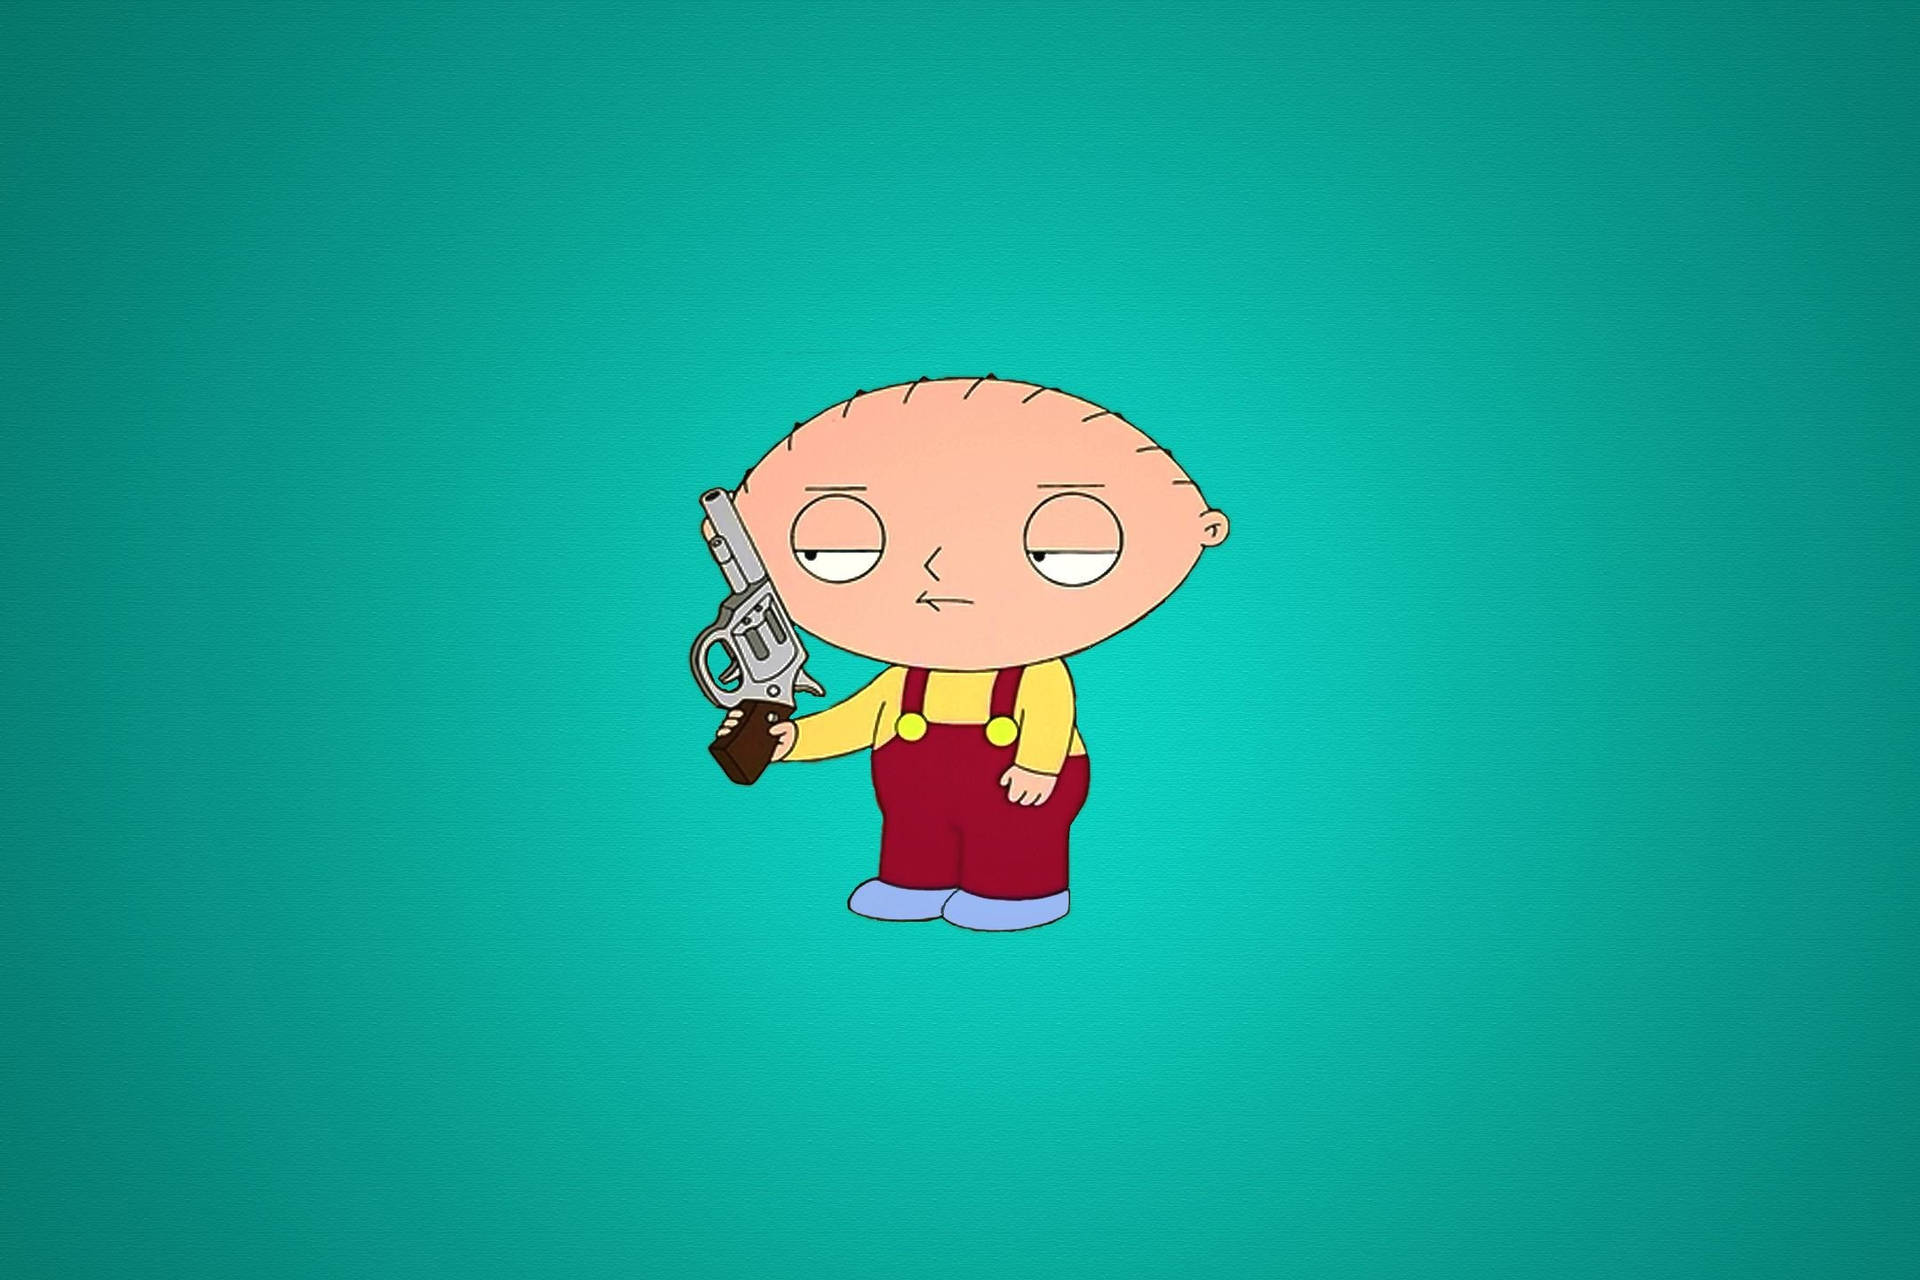 Stewie Griffin Holding A Gun Background